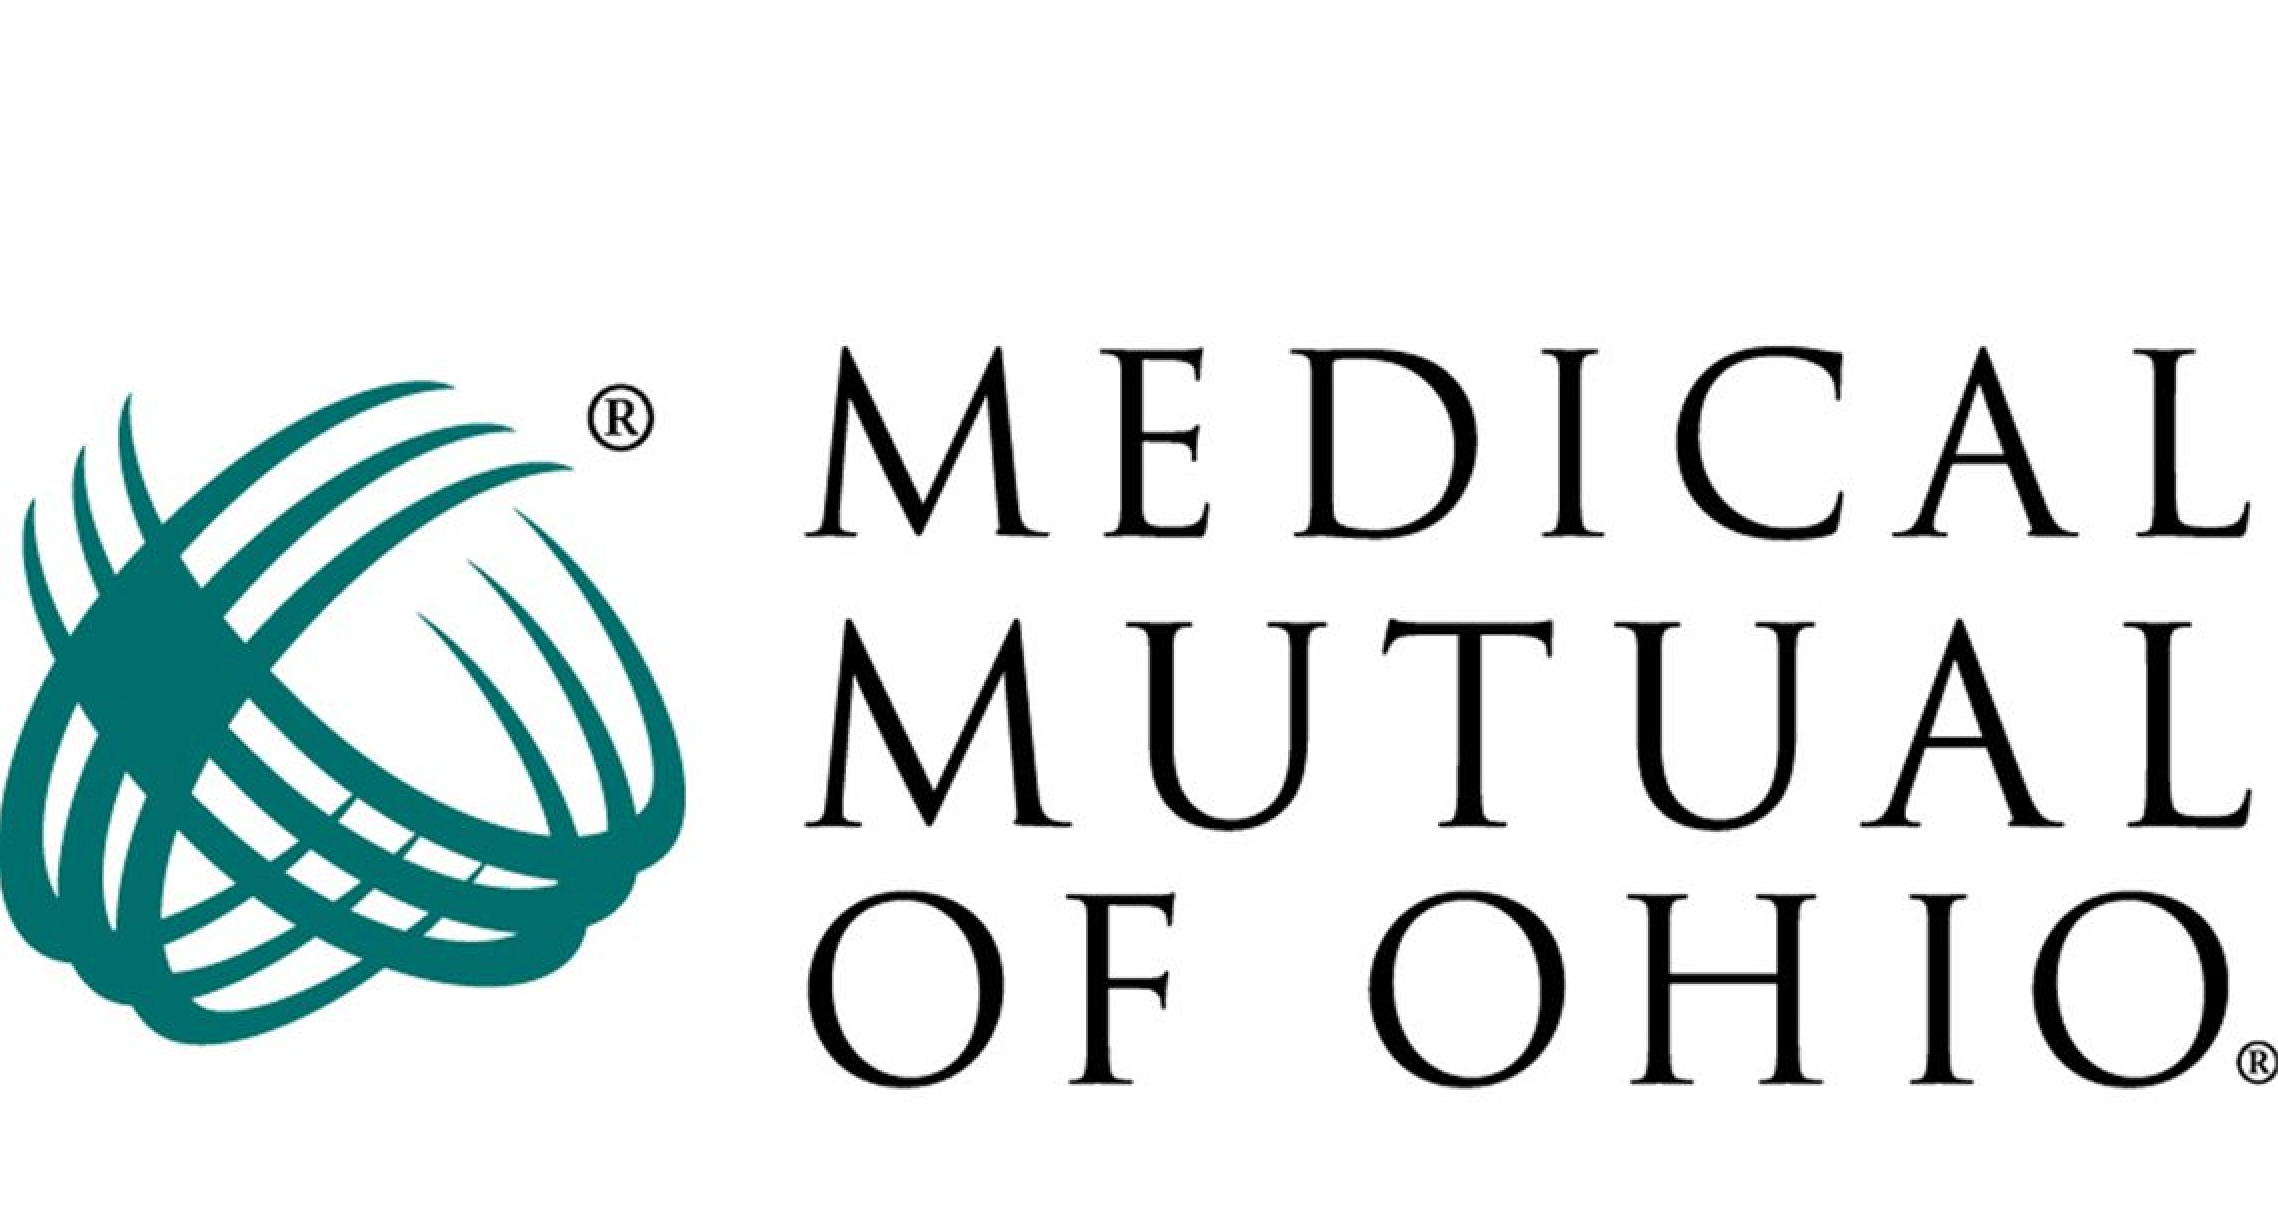 Medical Mutual Logo